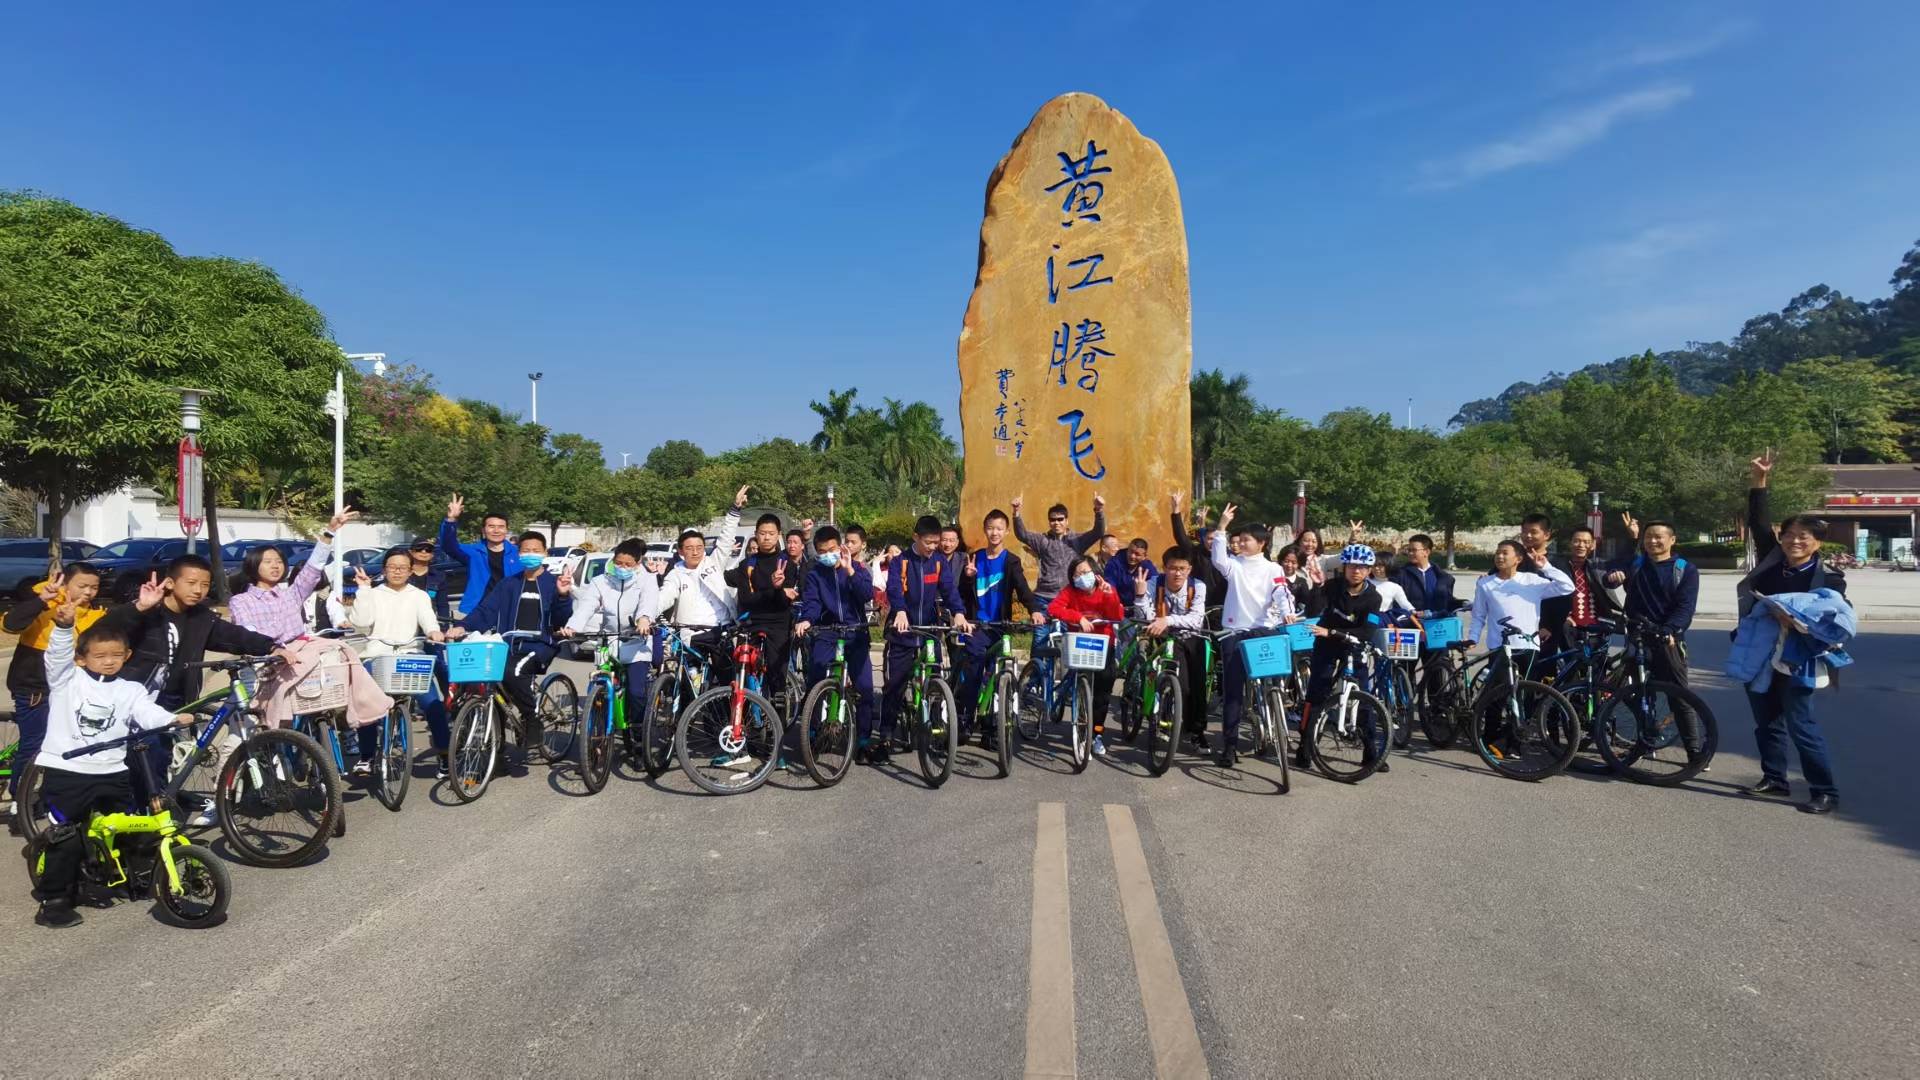 2020深圳亲子游攻略-骑行在深圳农家乐森林公园乐水山庄